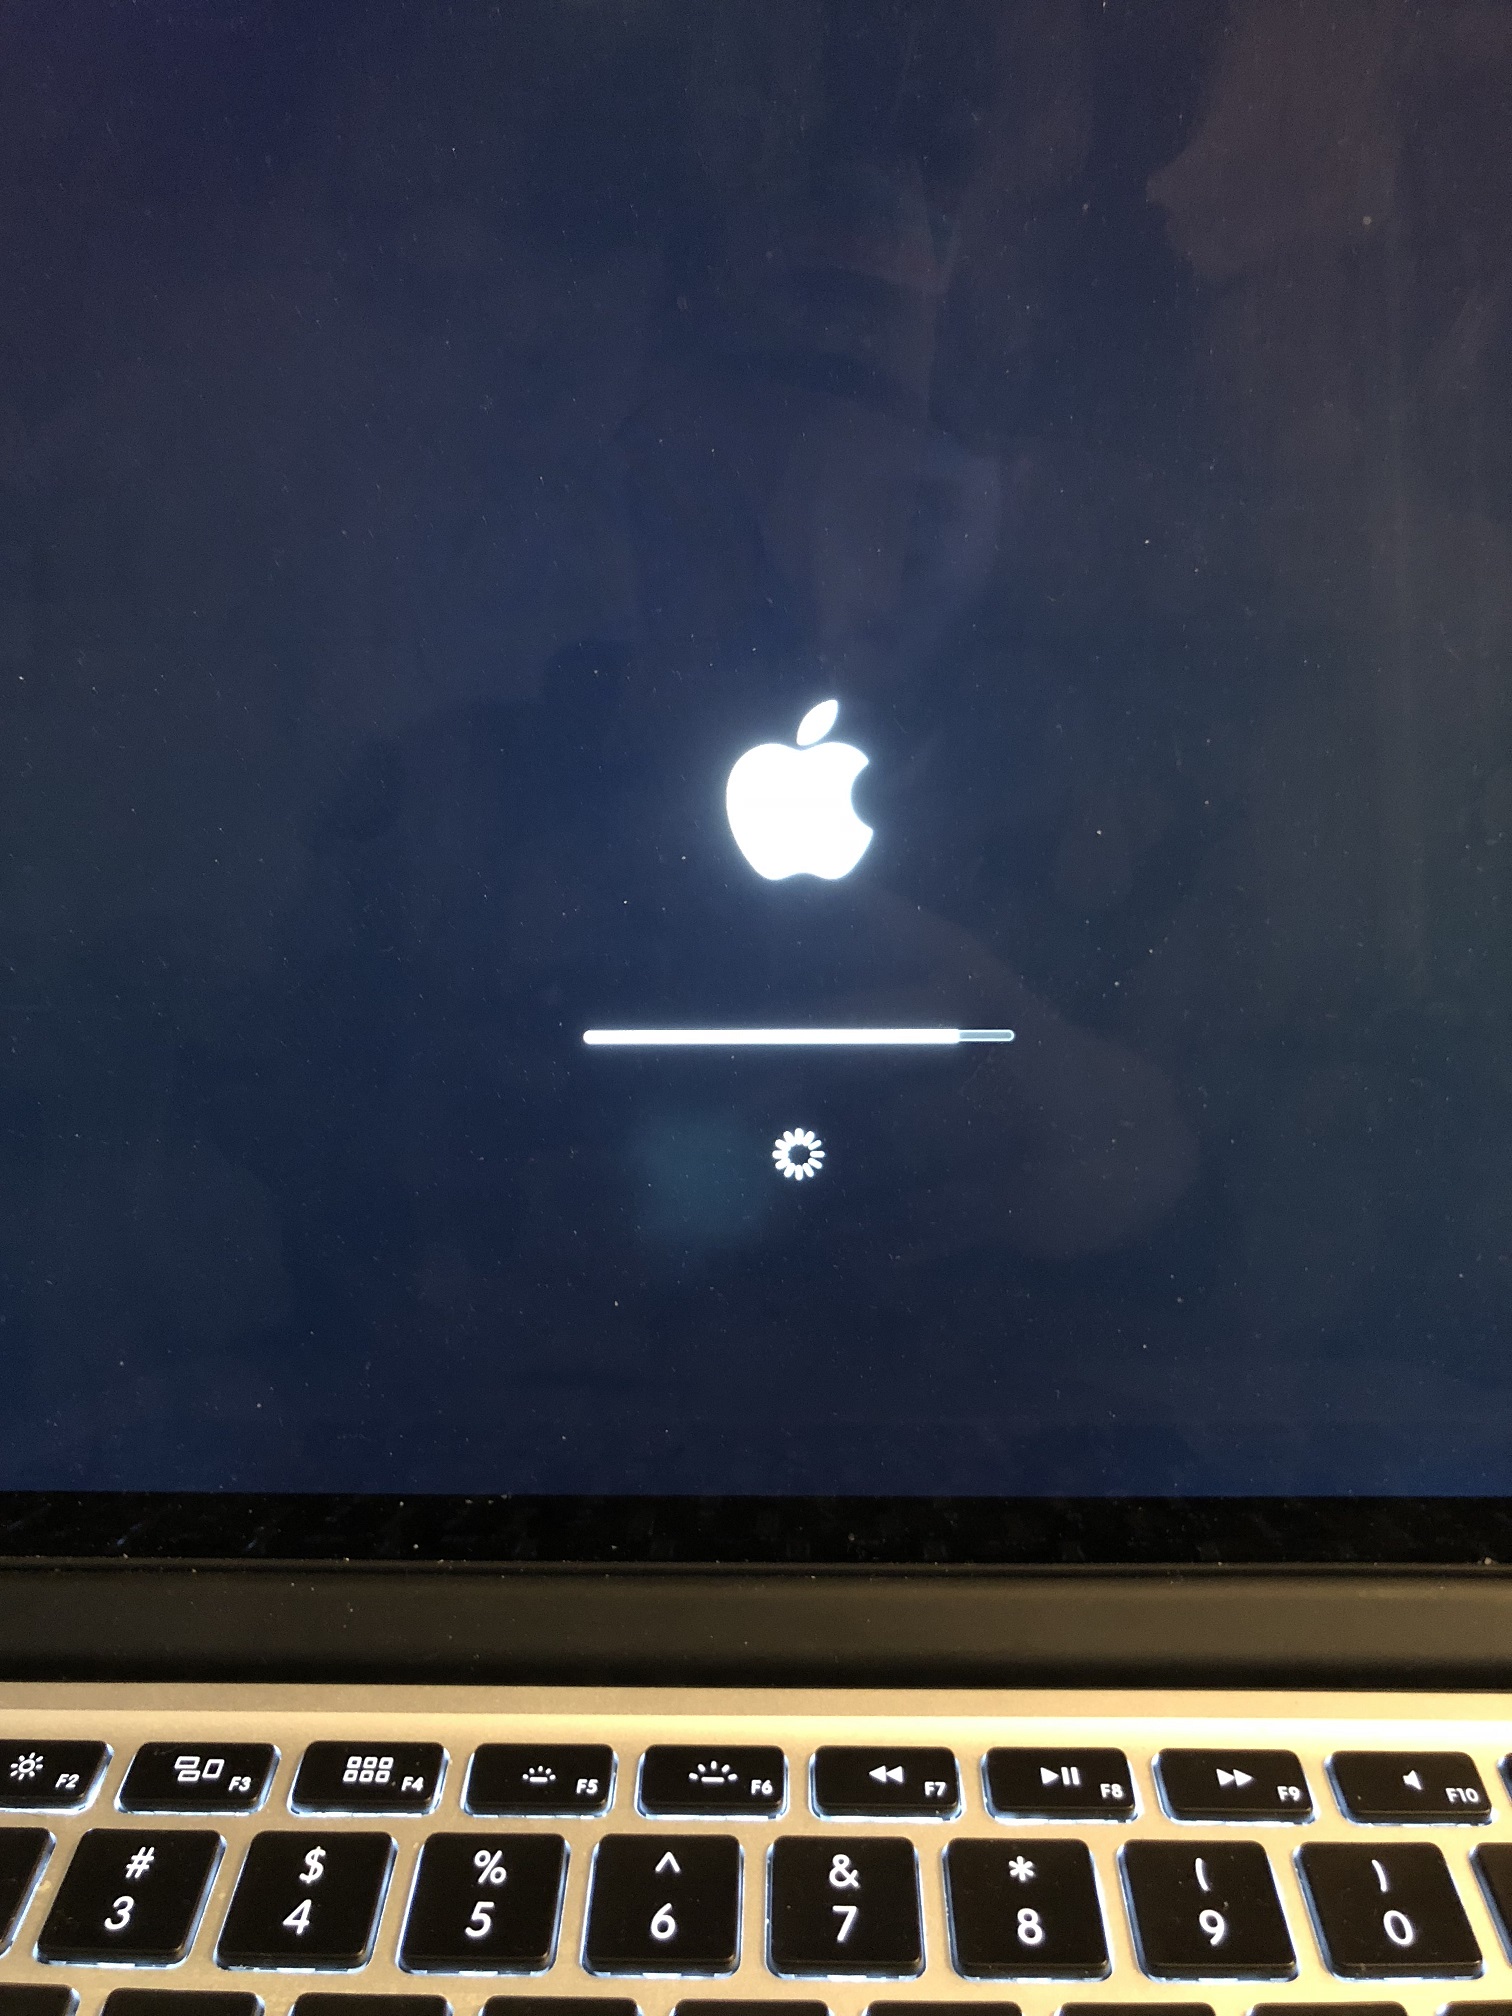 Macbook pro frozen during update